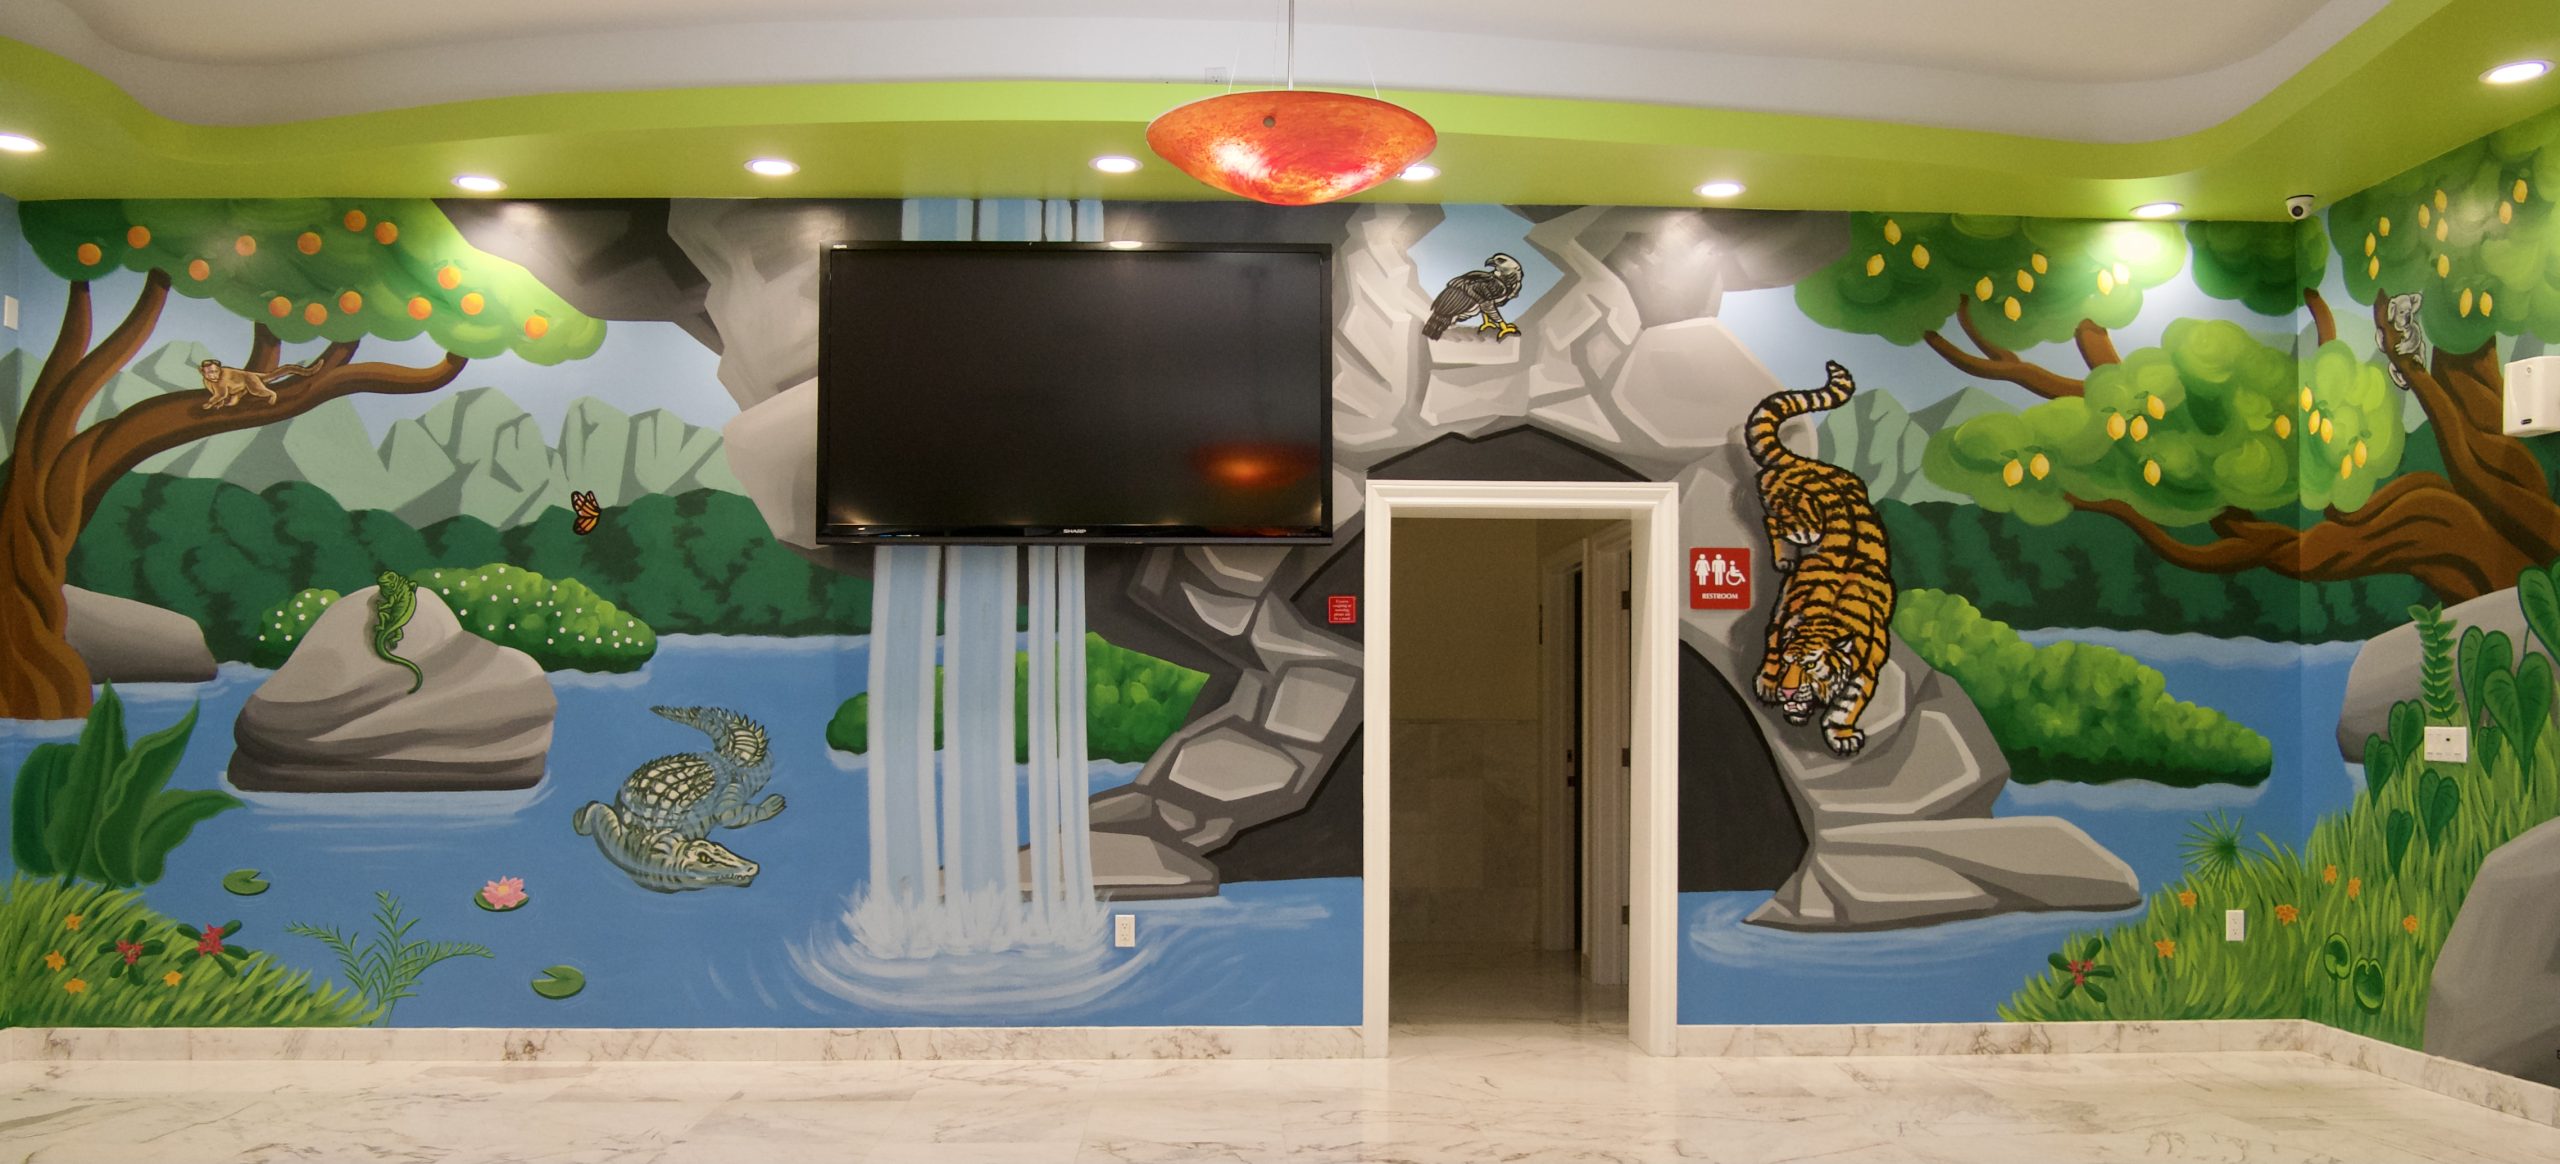 Miami Pediatric Jungle Murals